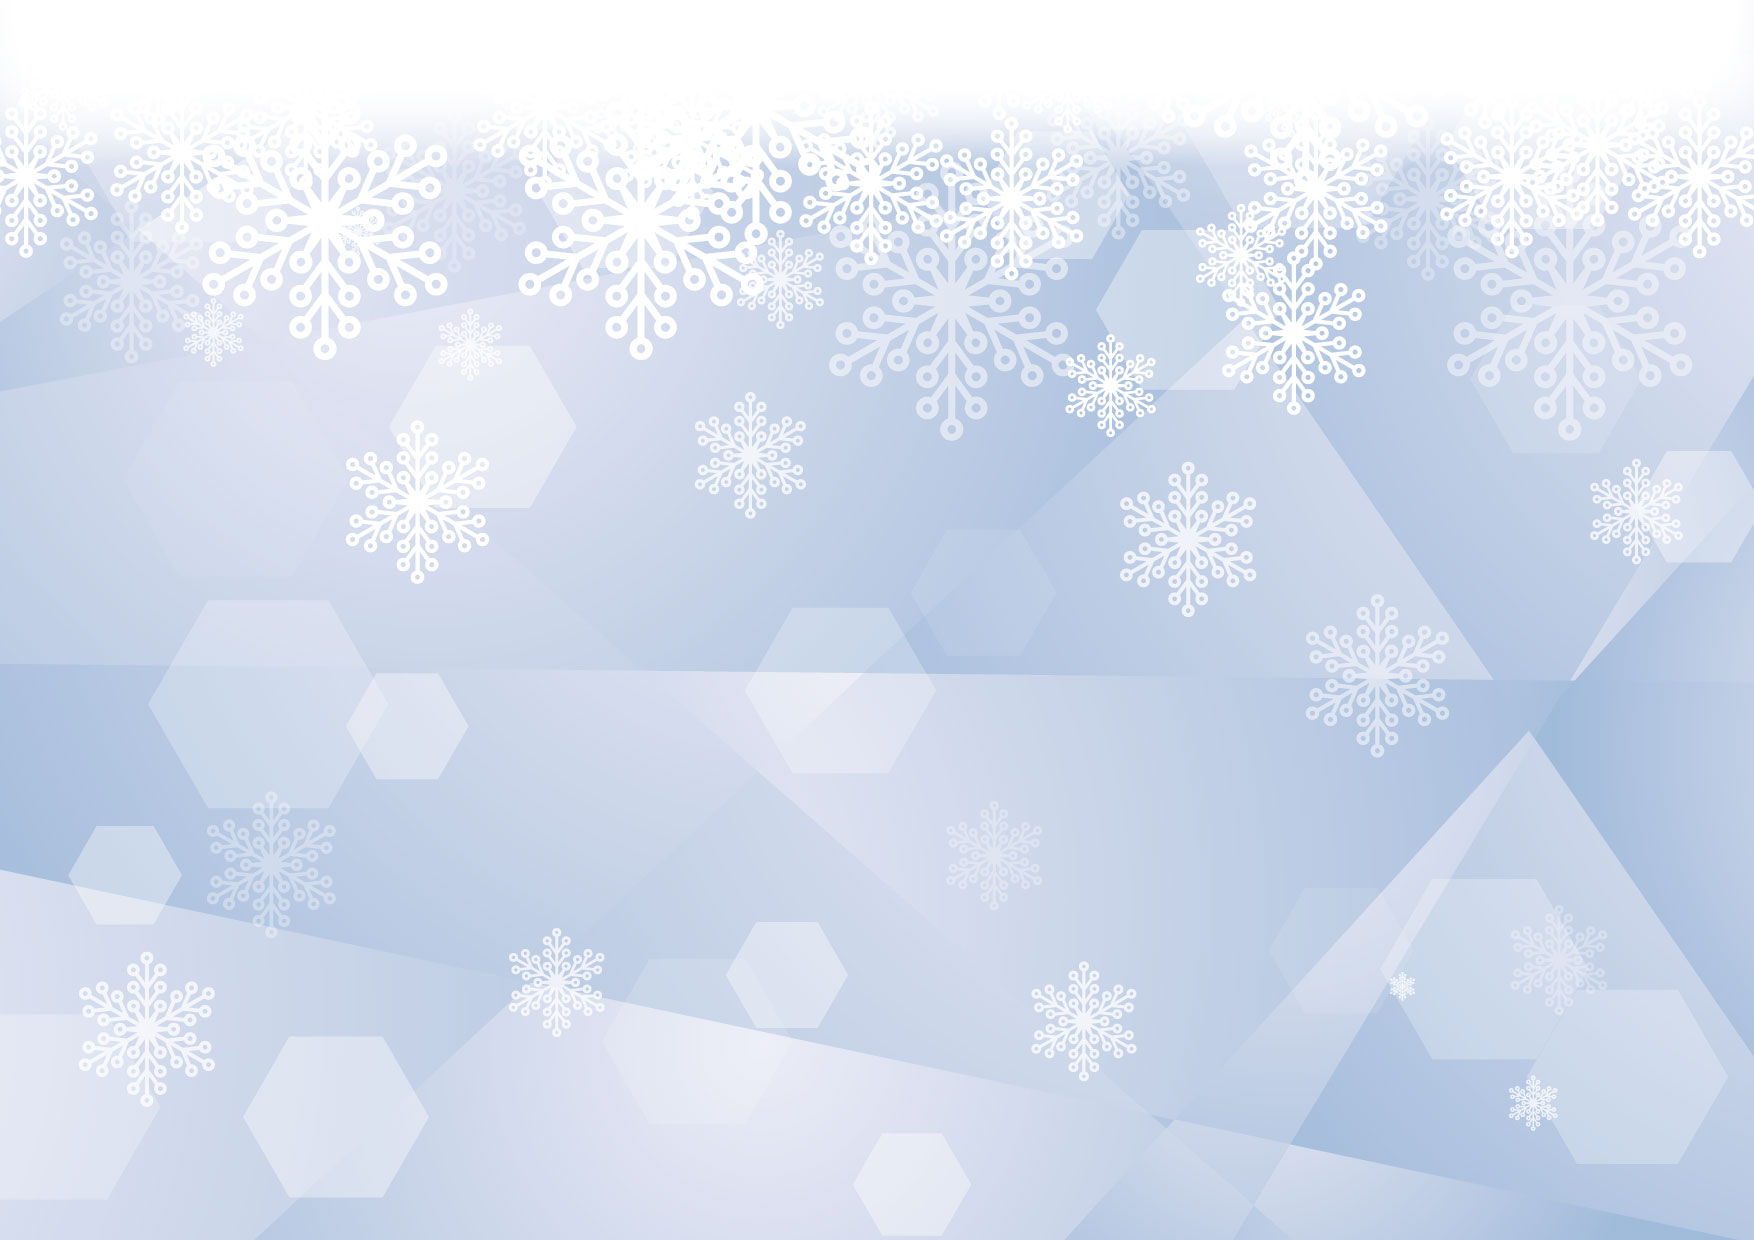 可愛いイラスト無料 雪の結晶 ガラス ブルー 背景 Free Illustration Snowflakes Glass Blue Background イラストダウンロード